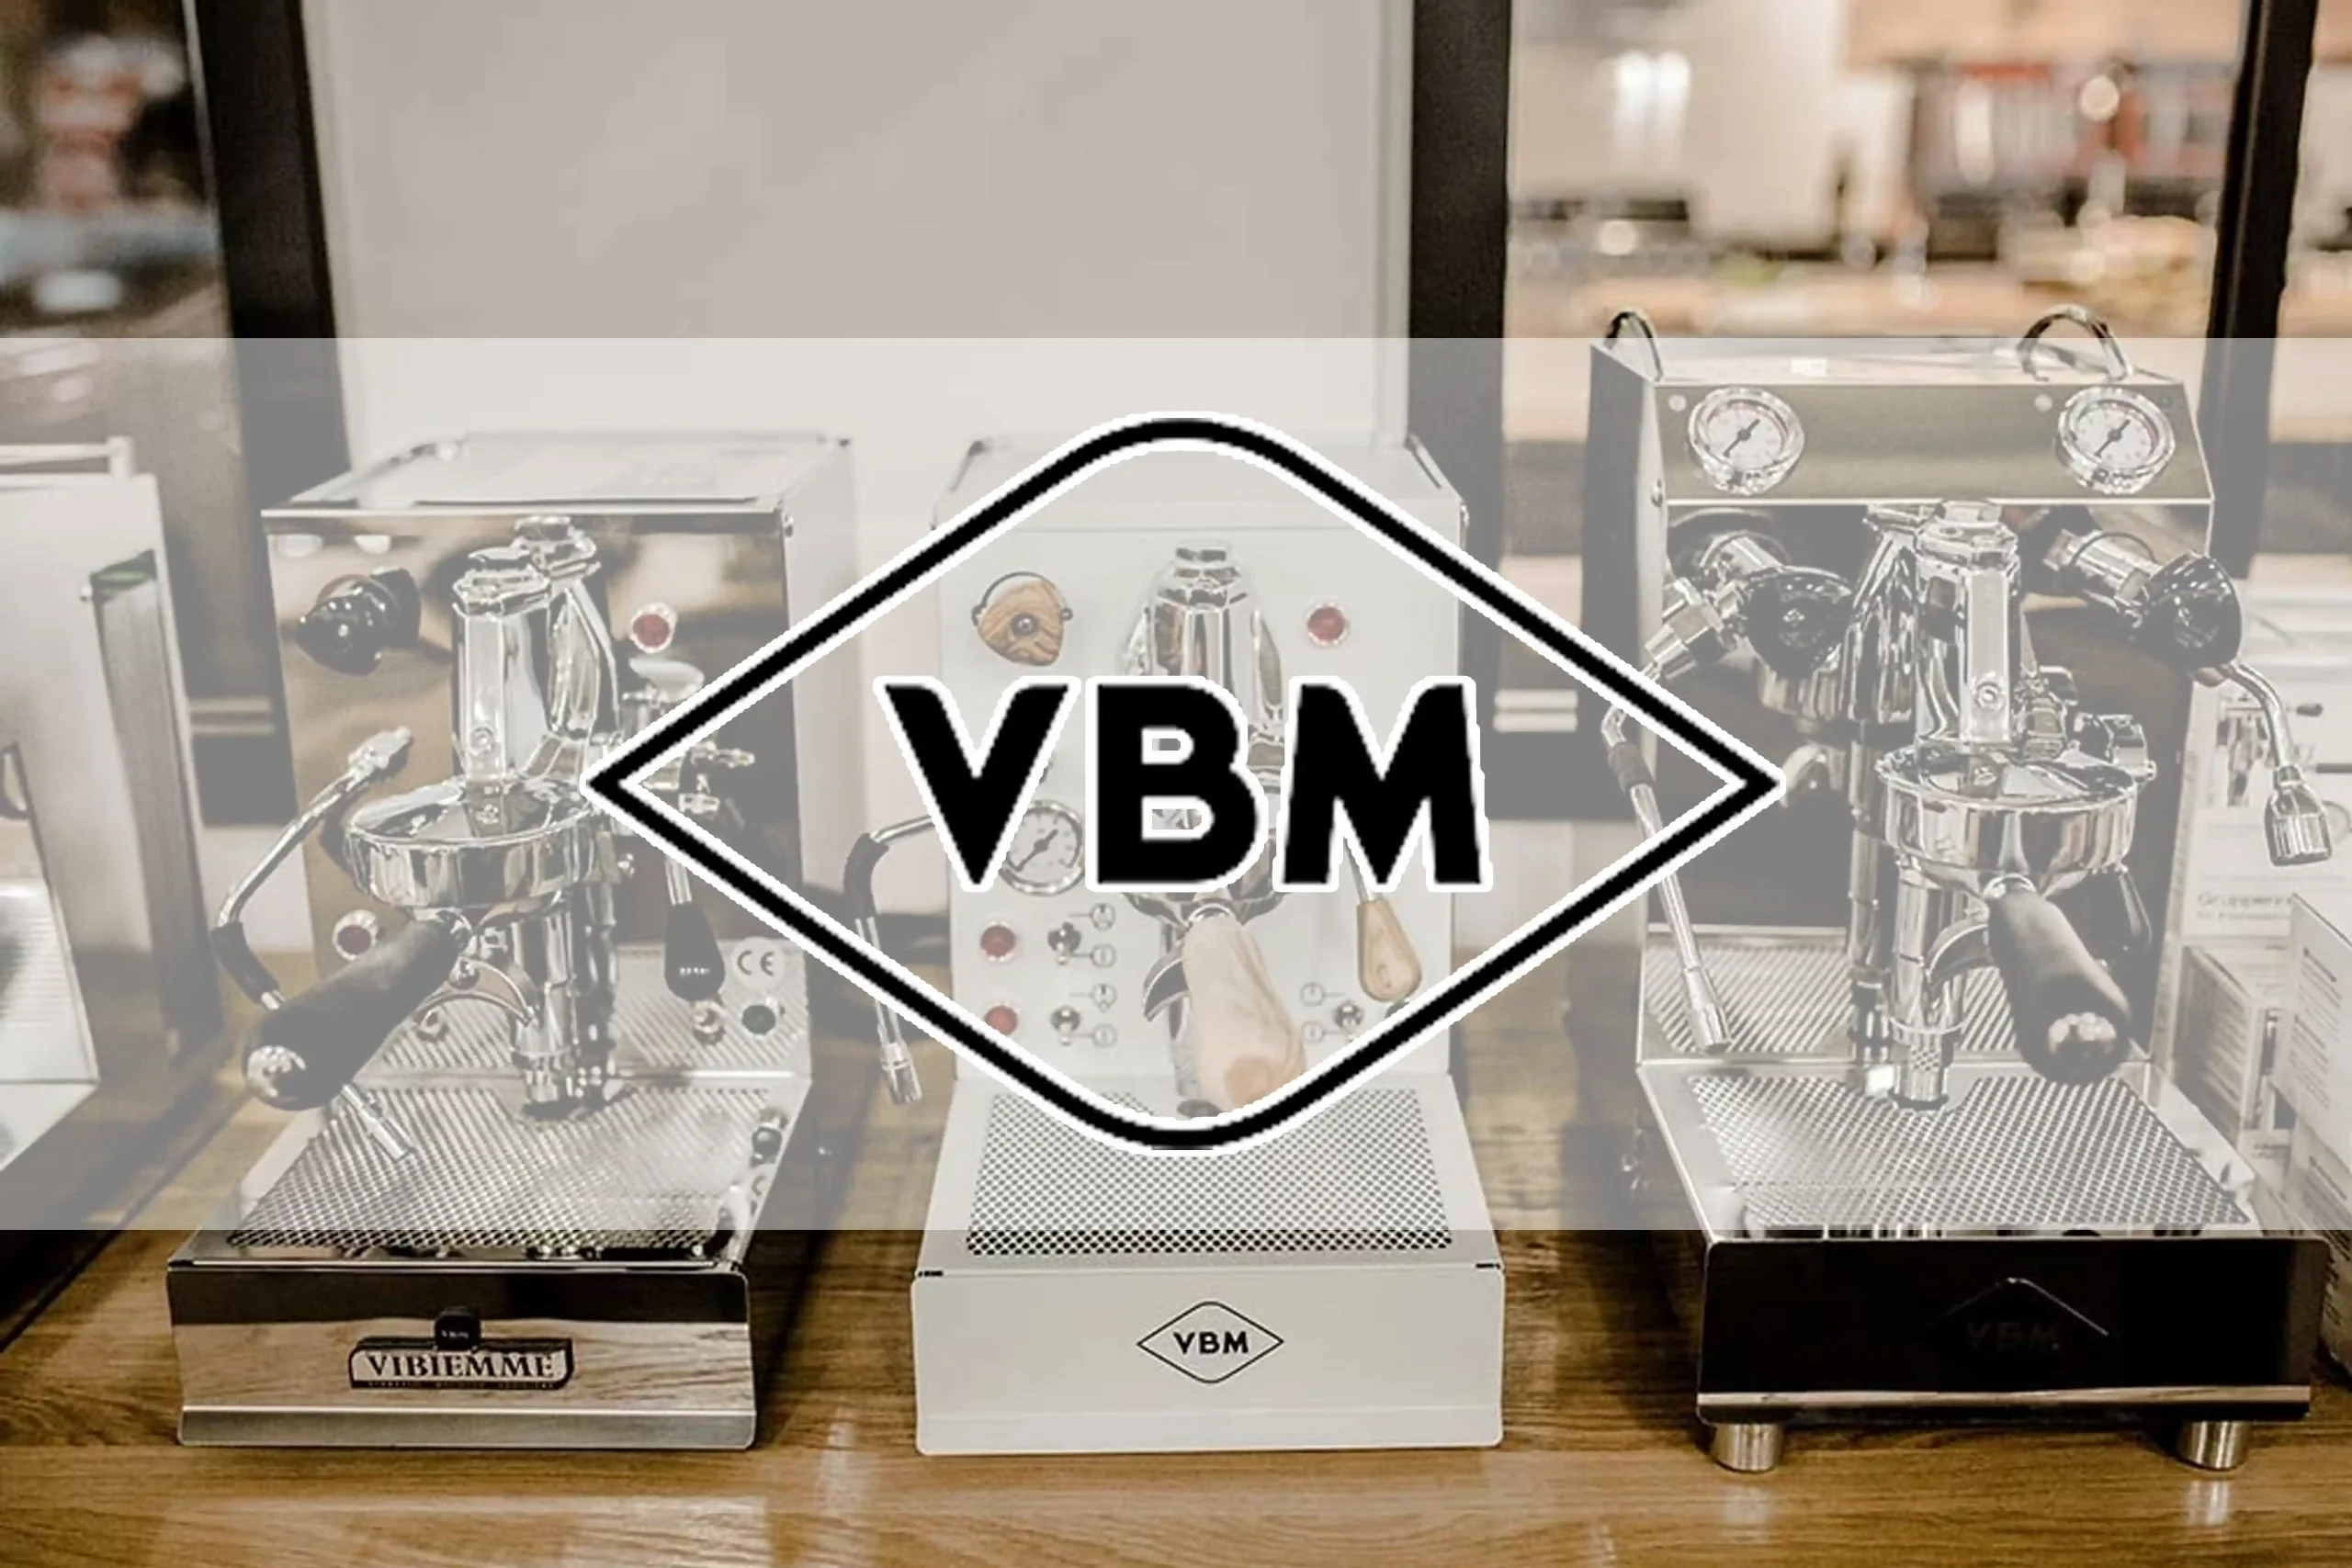 VBM Vibiemme Siebträger Espresso Espressokultur Barista Steelraum Grills und Lifestyle Michael Hofmann Hallstadt Bamberg Fachhändler